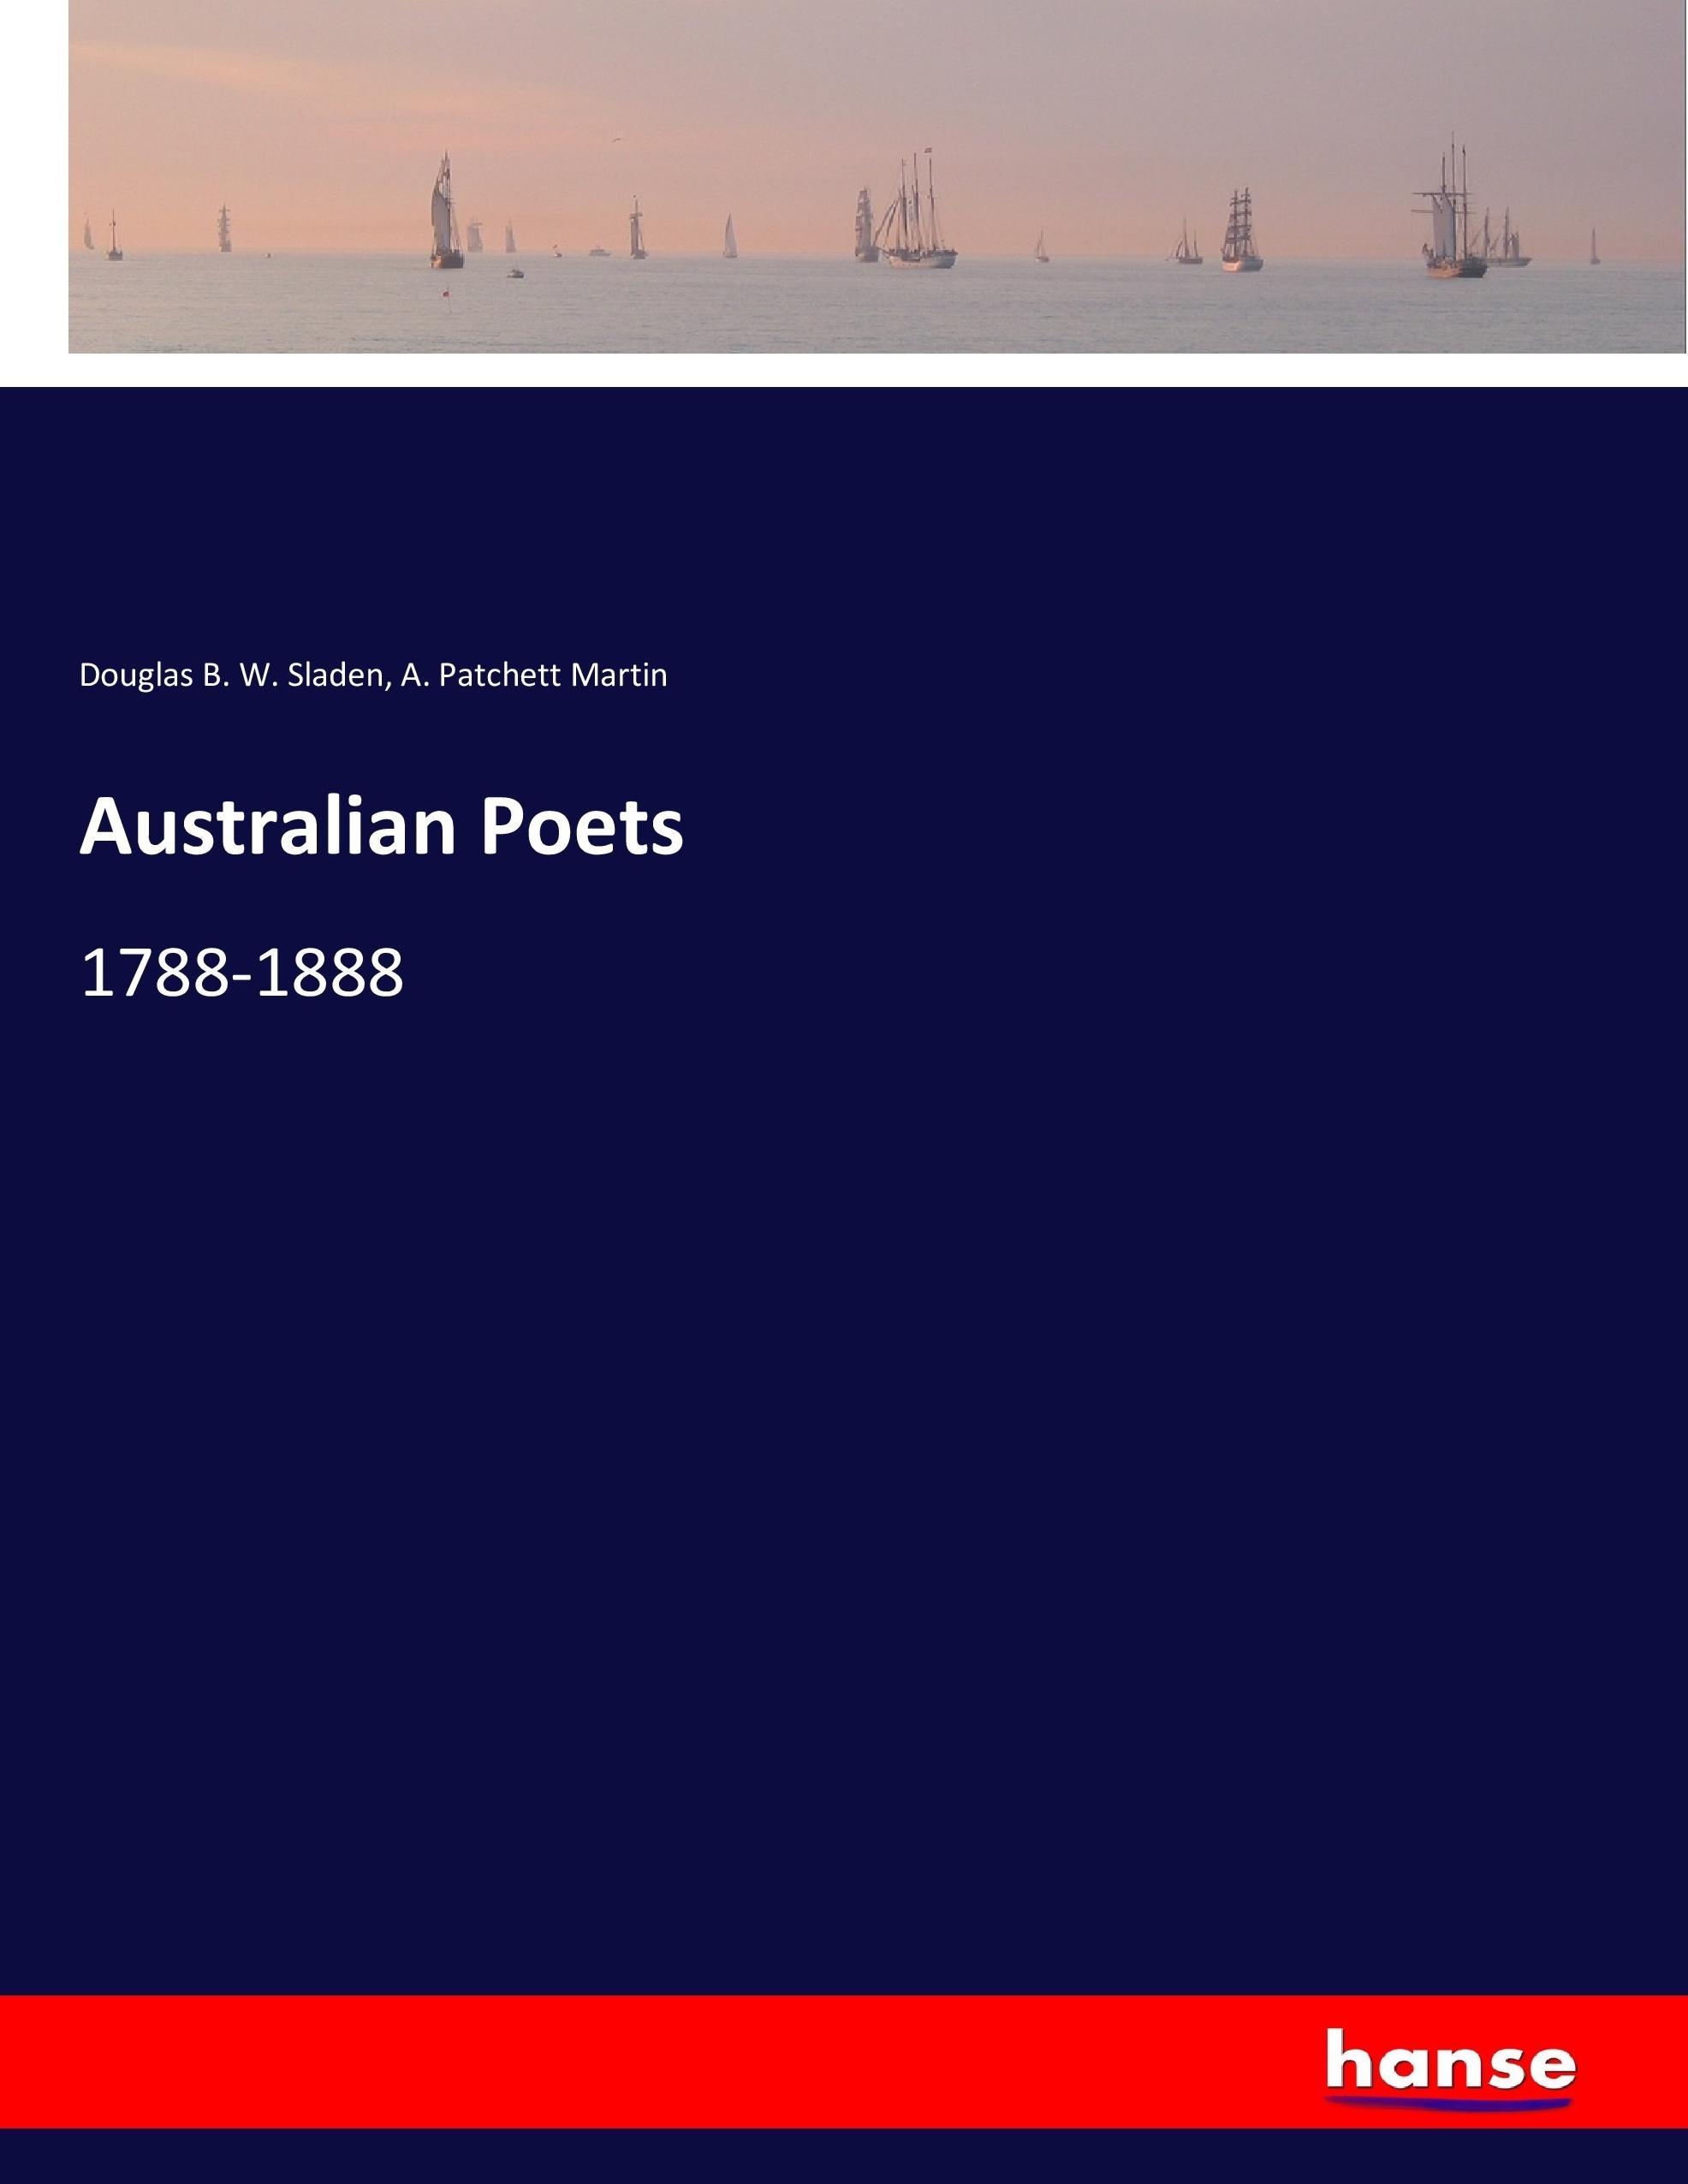 Australian Poets - Sladen, Douglas B. W. Martin, A. Patchett